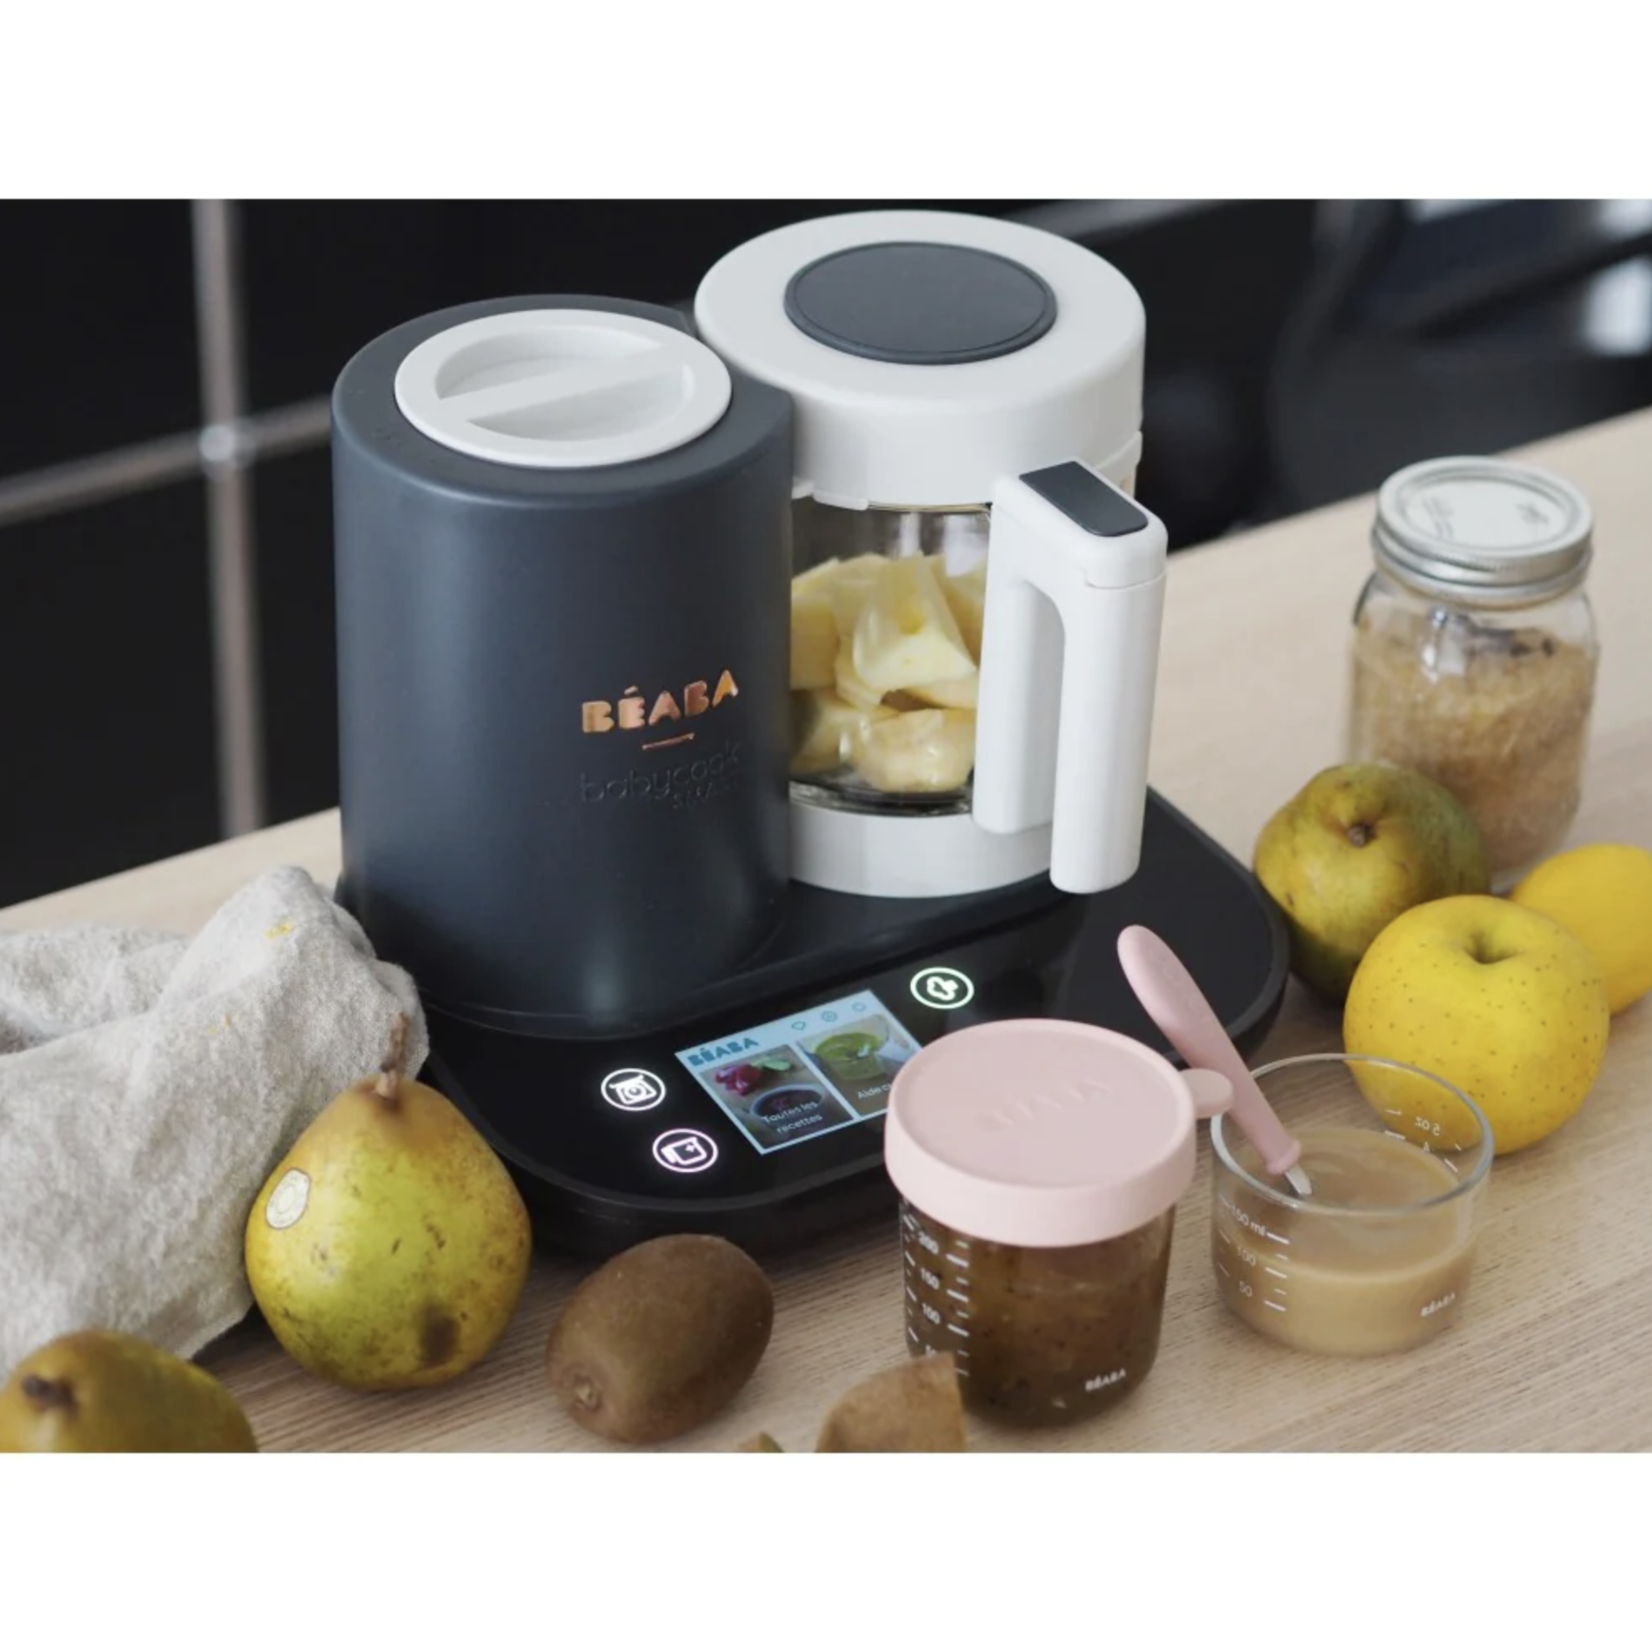 BEABA Babycook Smart Robot Cooker - Charcoal Grey